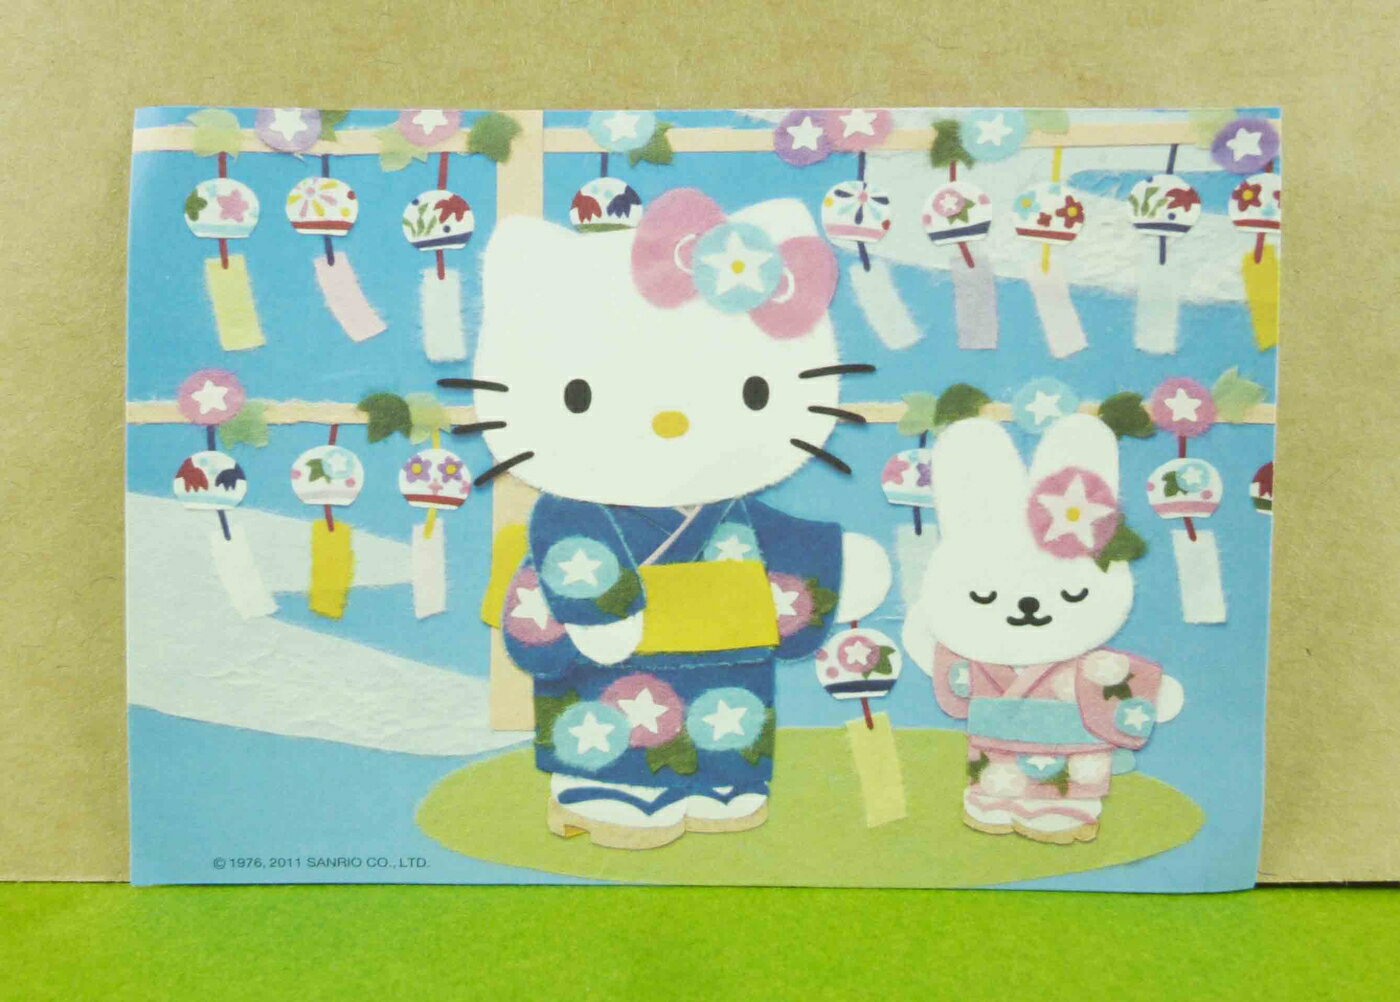 【震撼精品百貨】Hello Kitty 凱蒂貓 造型卡片-藍風鈴 震撼日式精品百貨